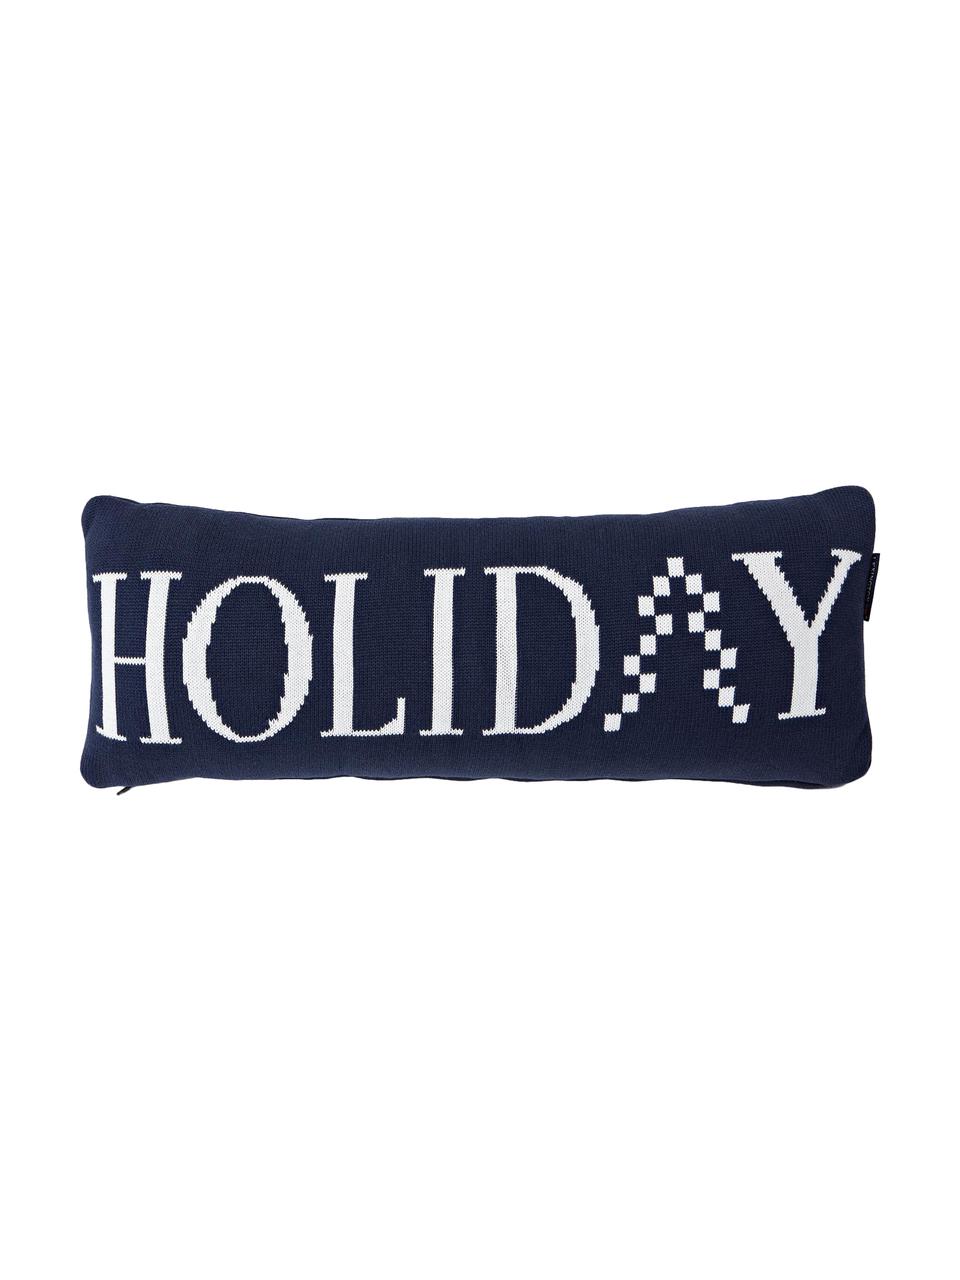 Langes Strick-Kissen Knitted Holiday mit Schriftzug, mit Inlett, Hülle: Baumwolle, Dunkelblau, Weiß, 25 x 70 cm